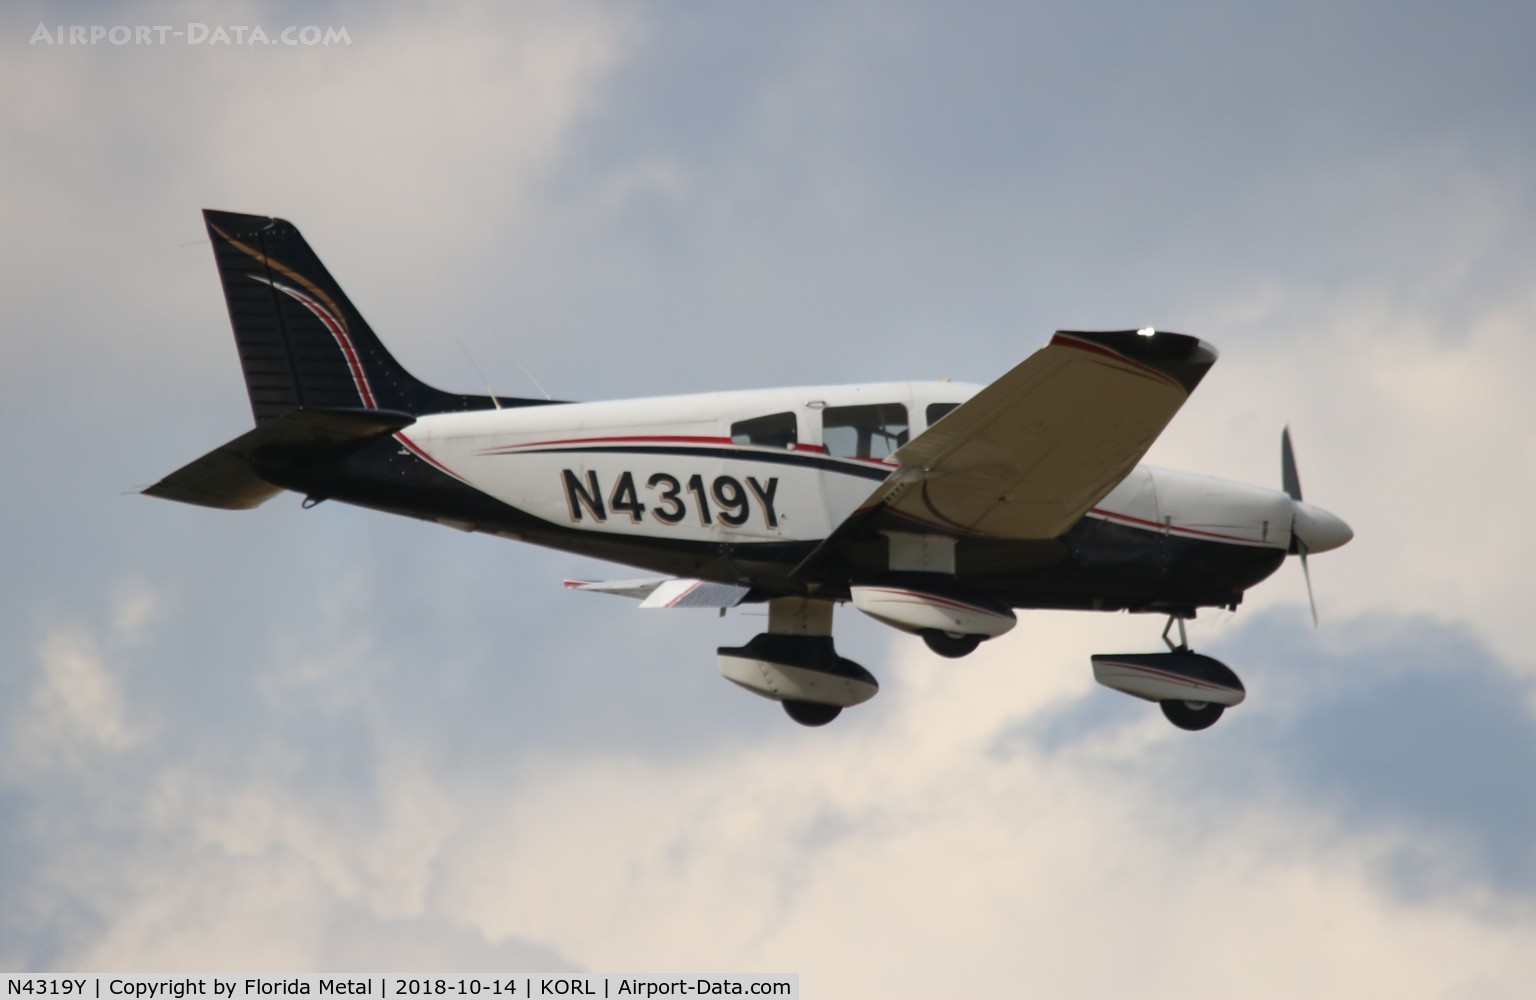 N4319Y, 1983 Piper PA-28-181 C/N 28-8490010, PA-28-181